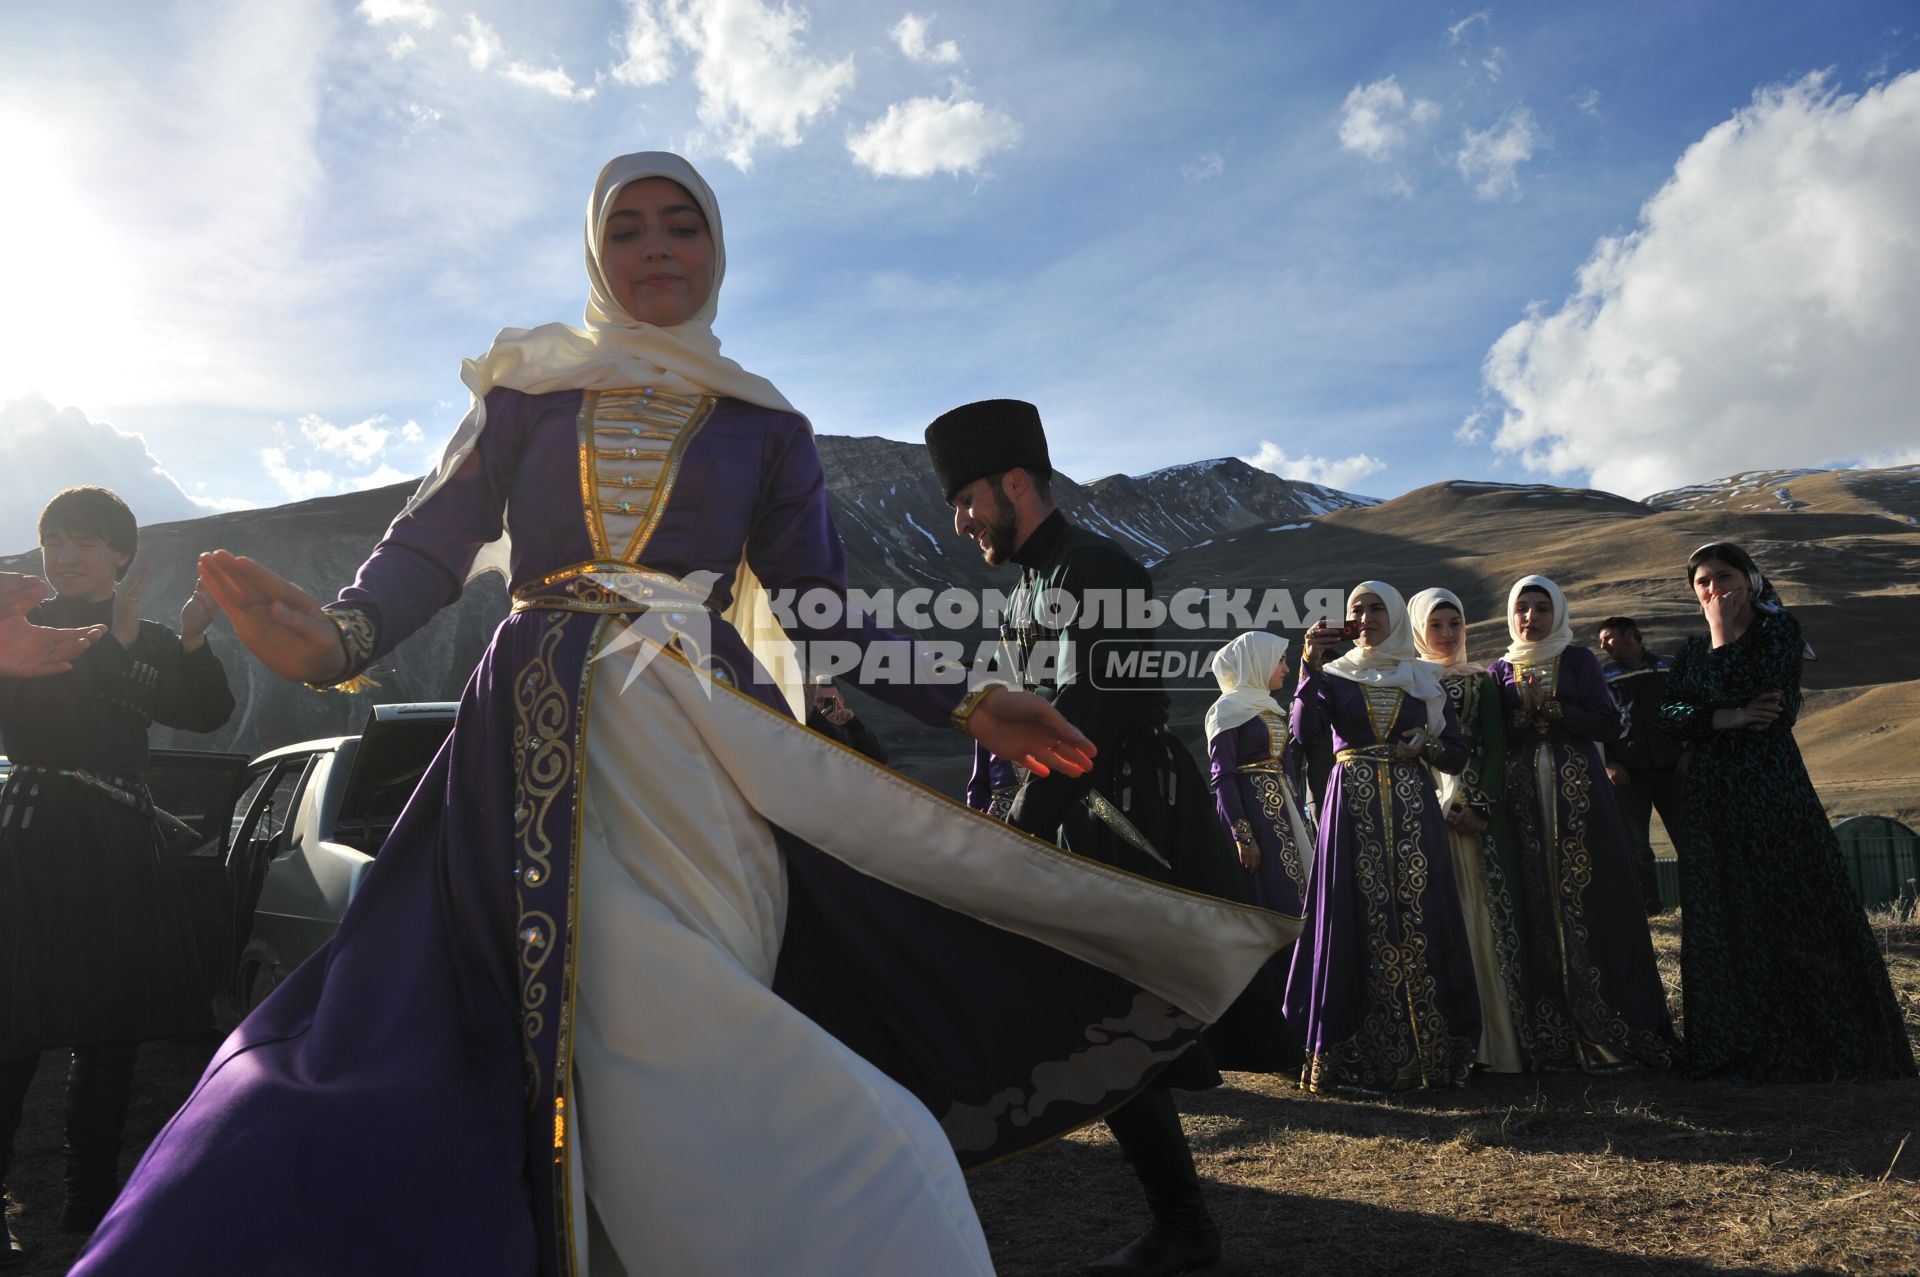 Чечня. Веденский район. Местные жители в национальных костюмах танцуют лезгинку.